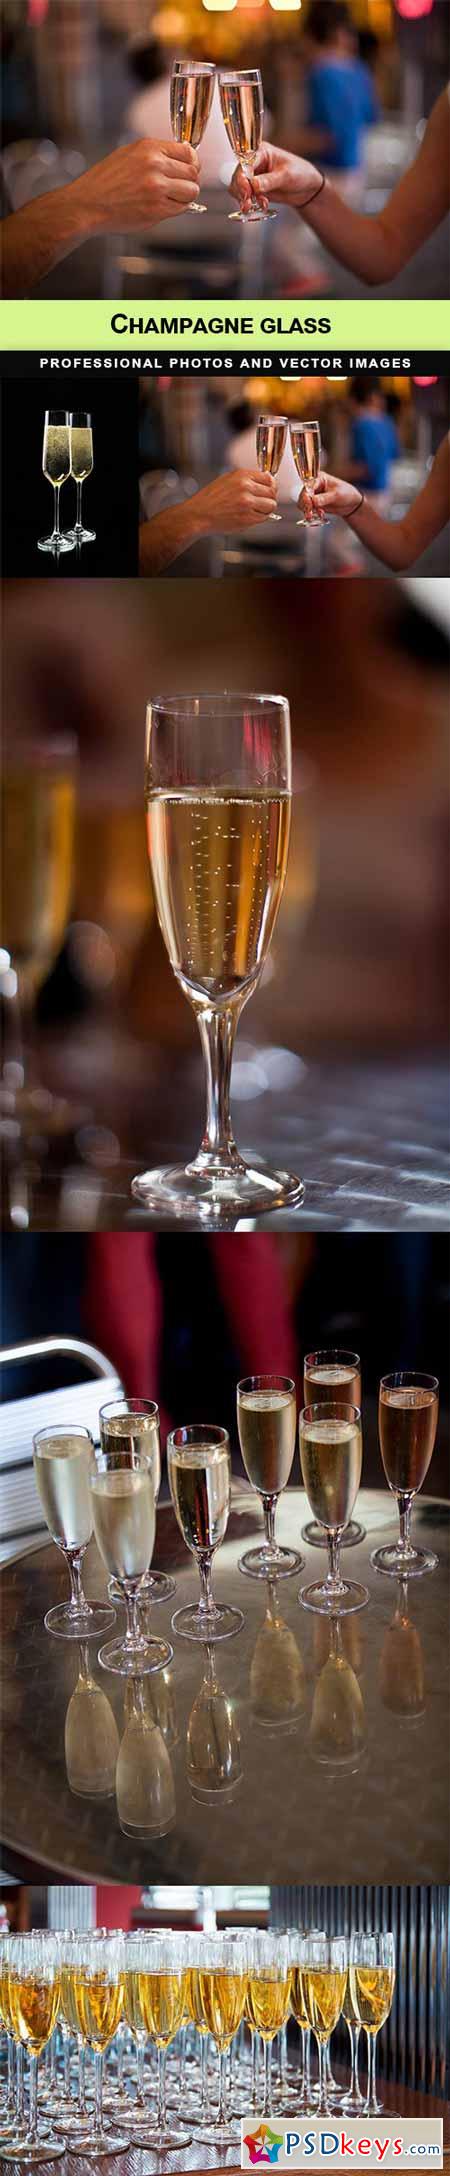 Champagne glass - 5 UHQ JPEG